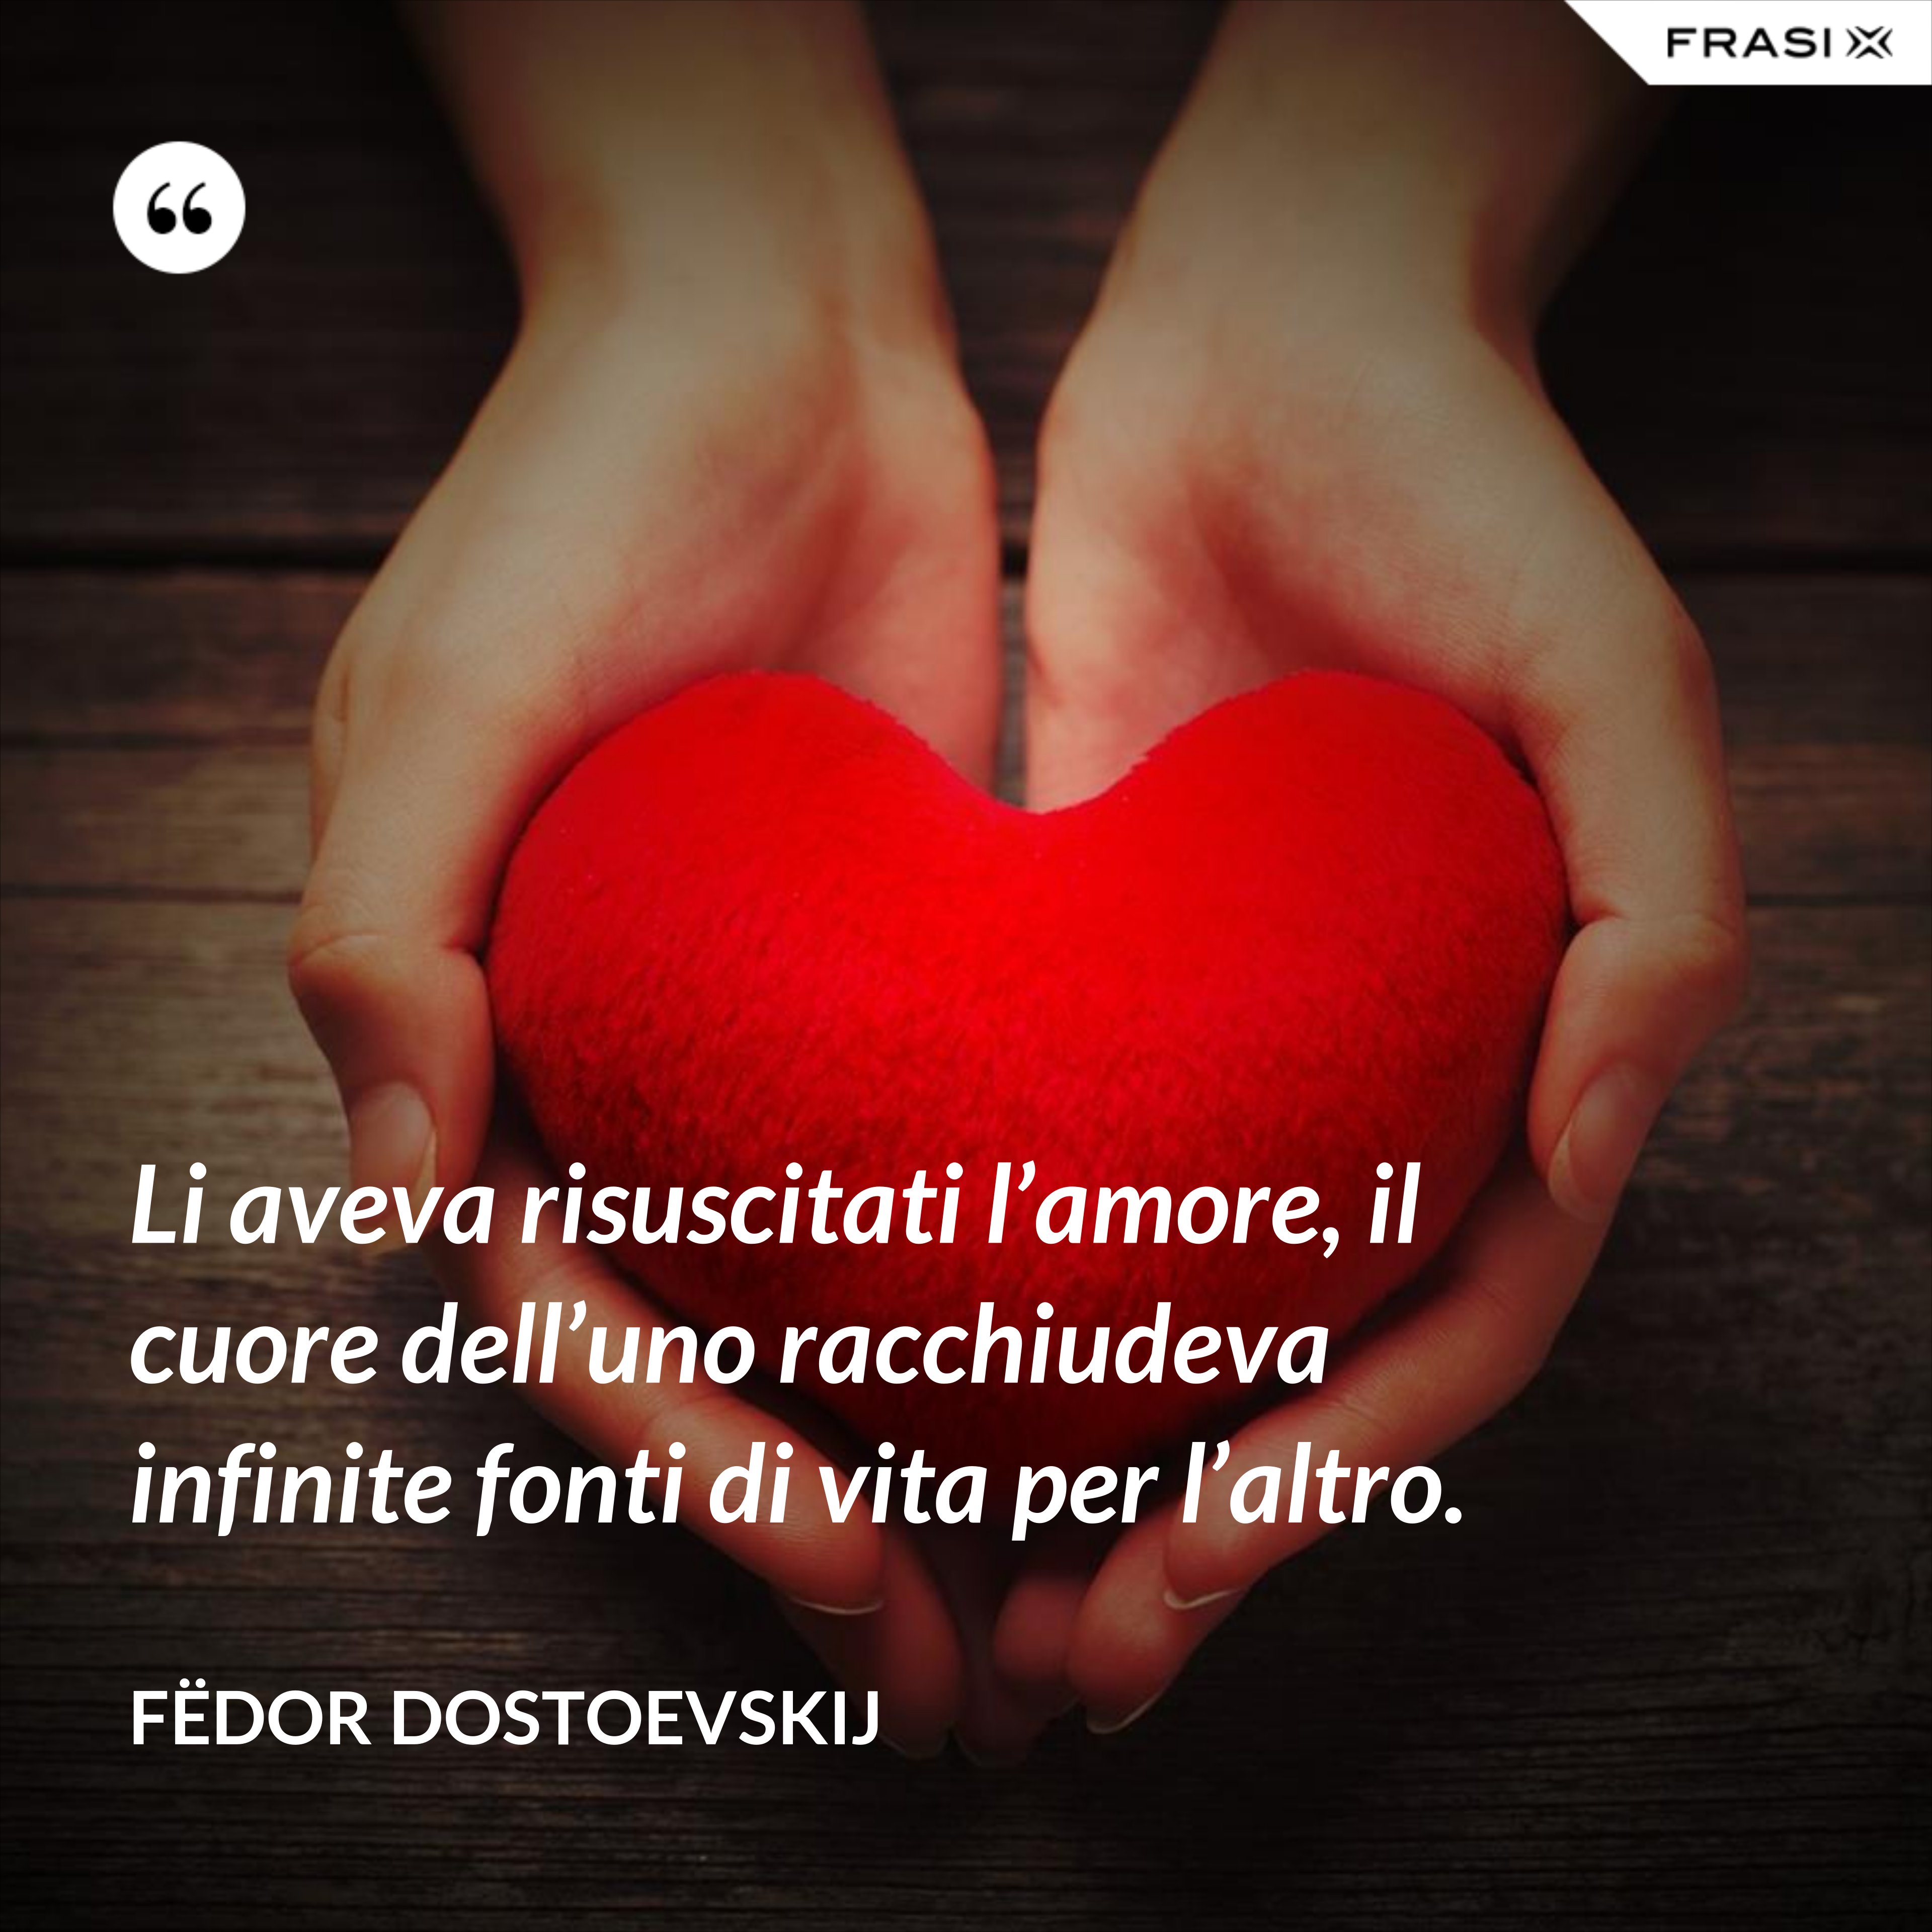 Li aveva risuscitati l’amore, il cuore dell’uno racchiudeva infinite fonti di vita per l’altro. - Fëdor Dostoevskij